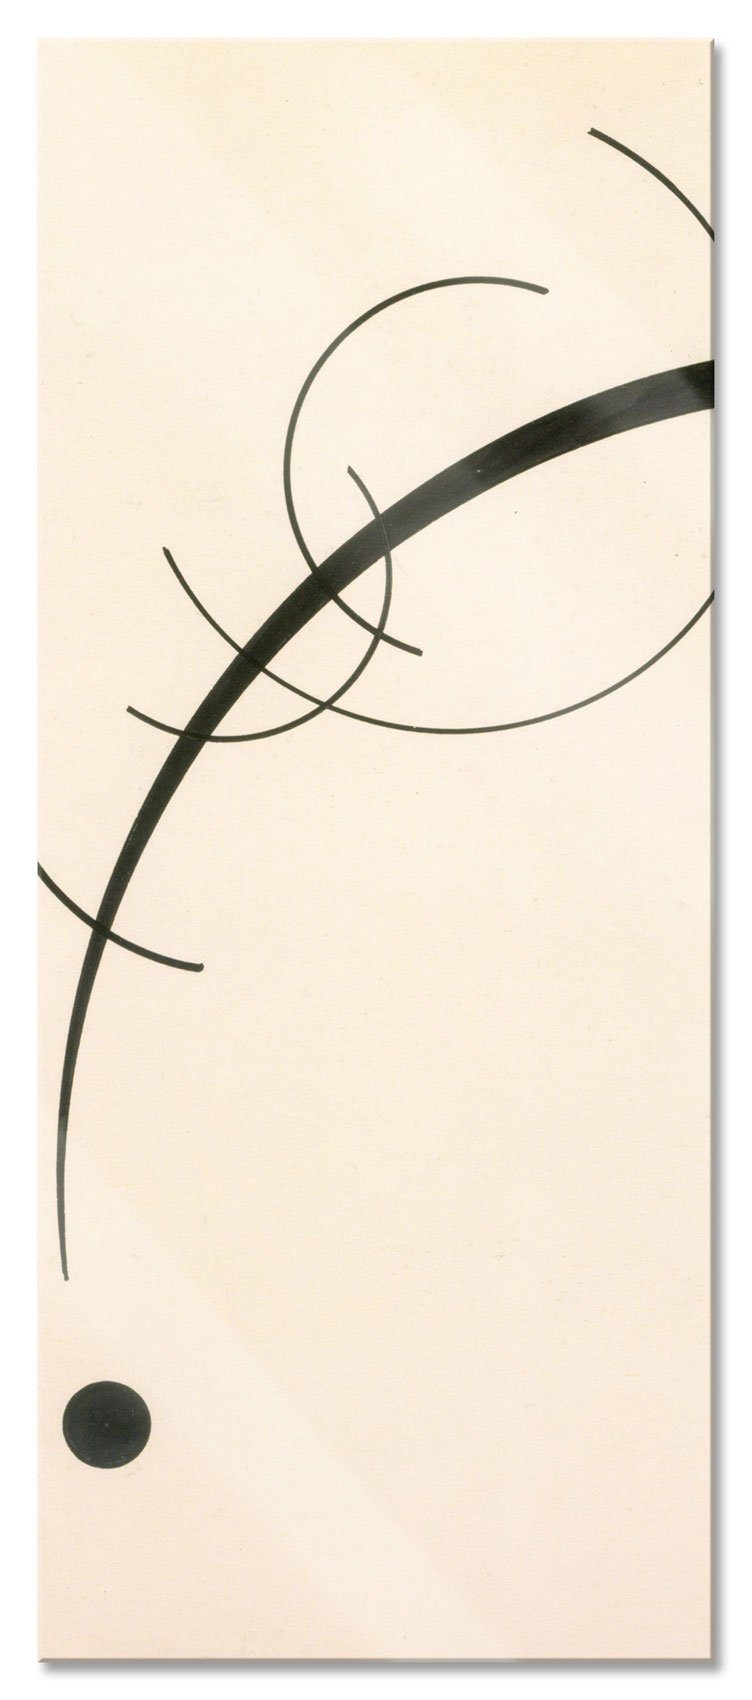 Pixxprint Glasbild Wassily Kandinsky - Fern, Wassily Kandinsky - Fern (1 St), Glasbild aus Echtglas, inkl. Aufhängungen und Abstandshalter